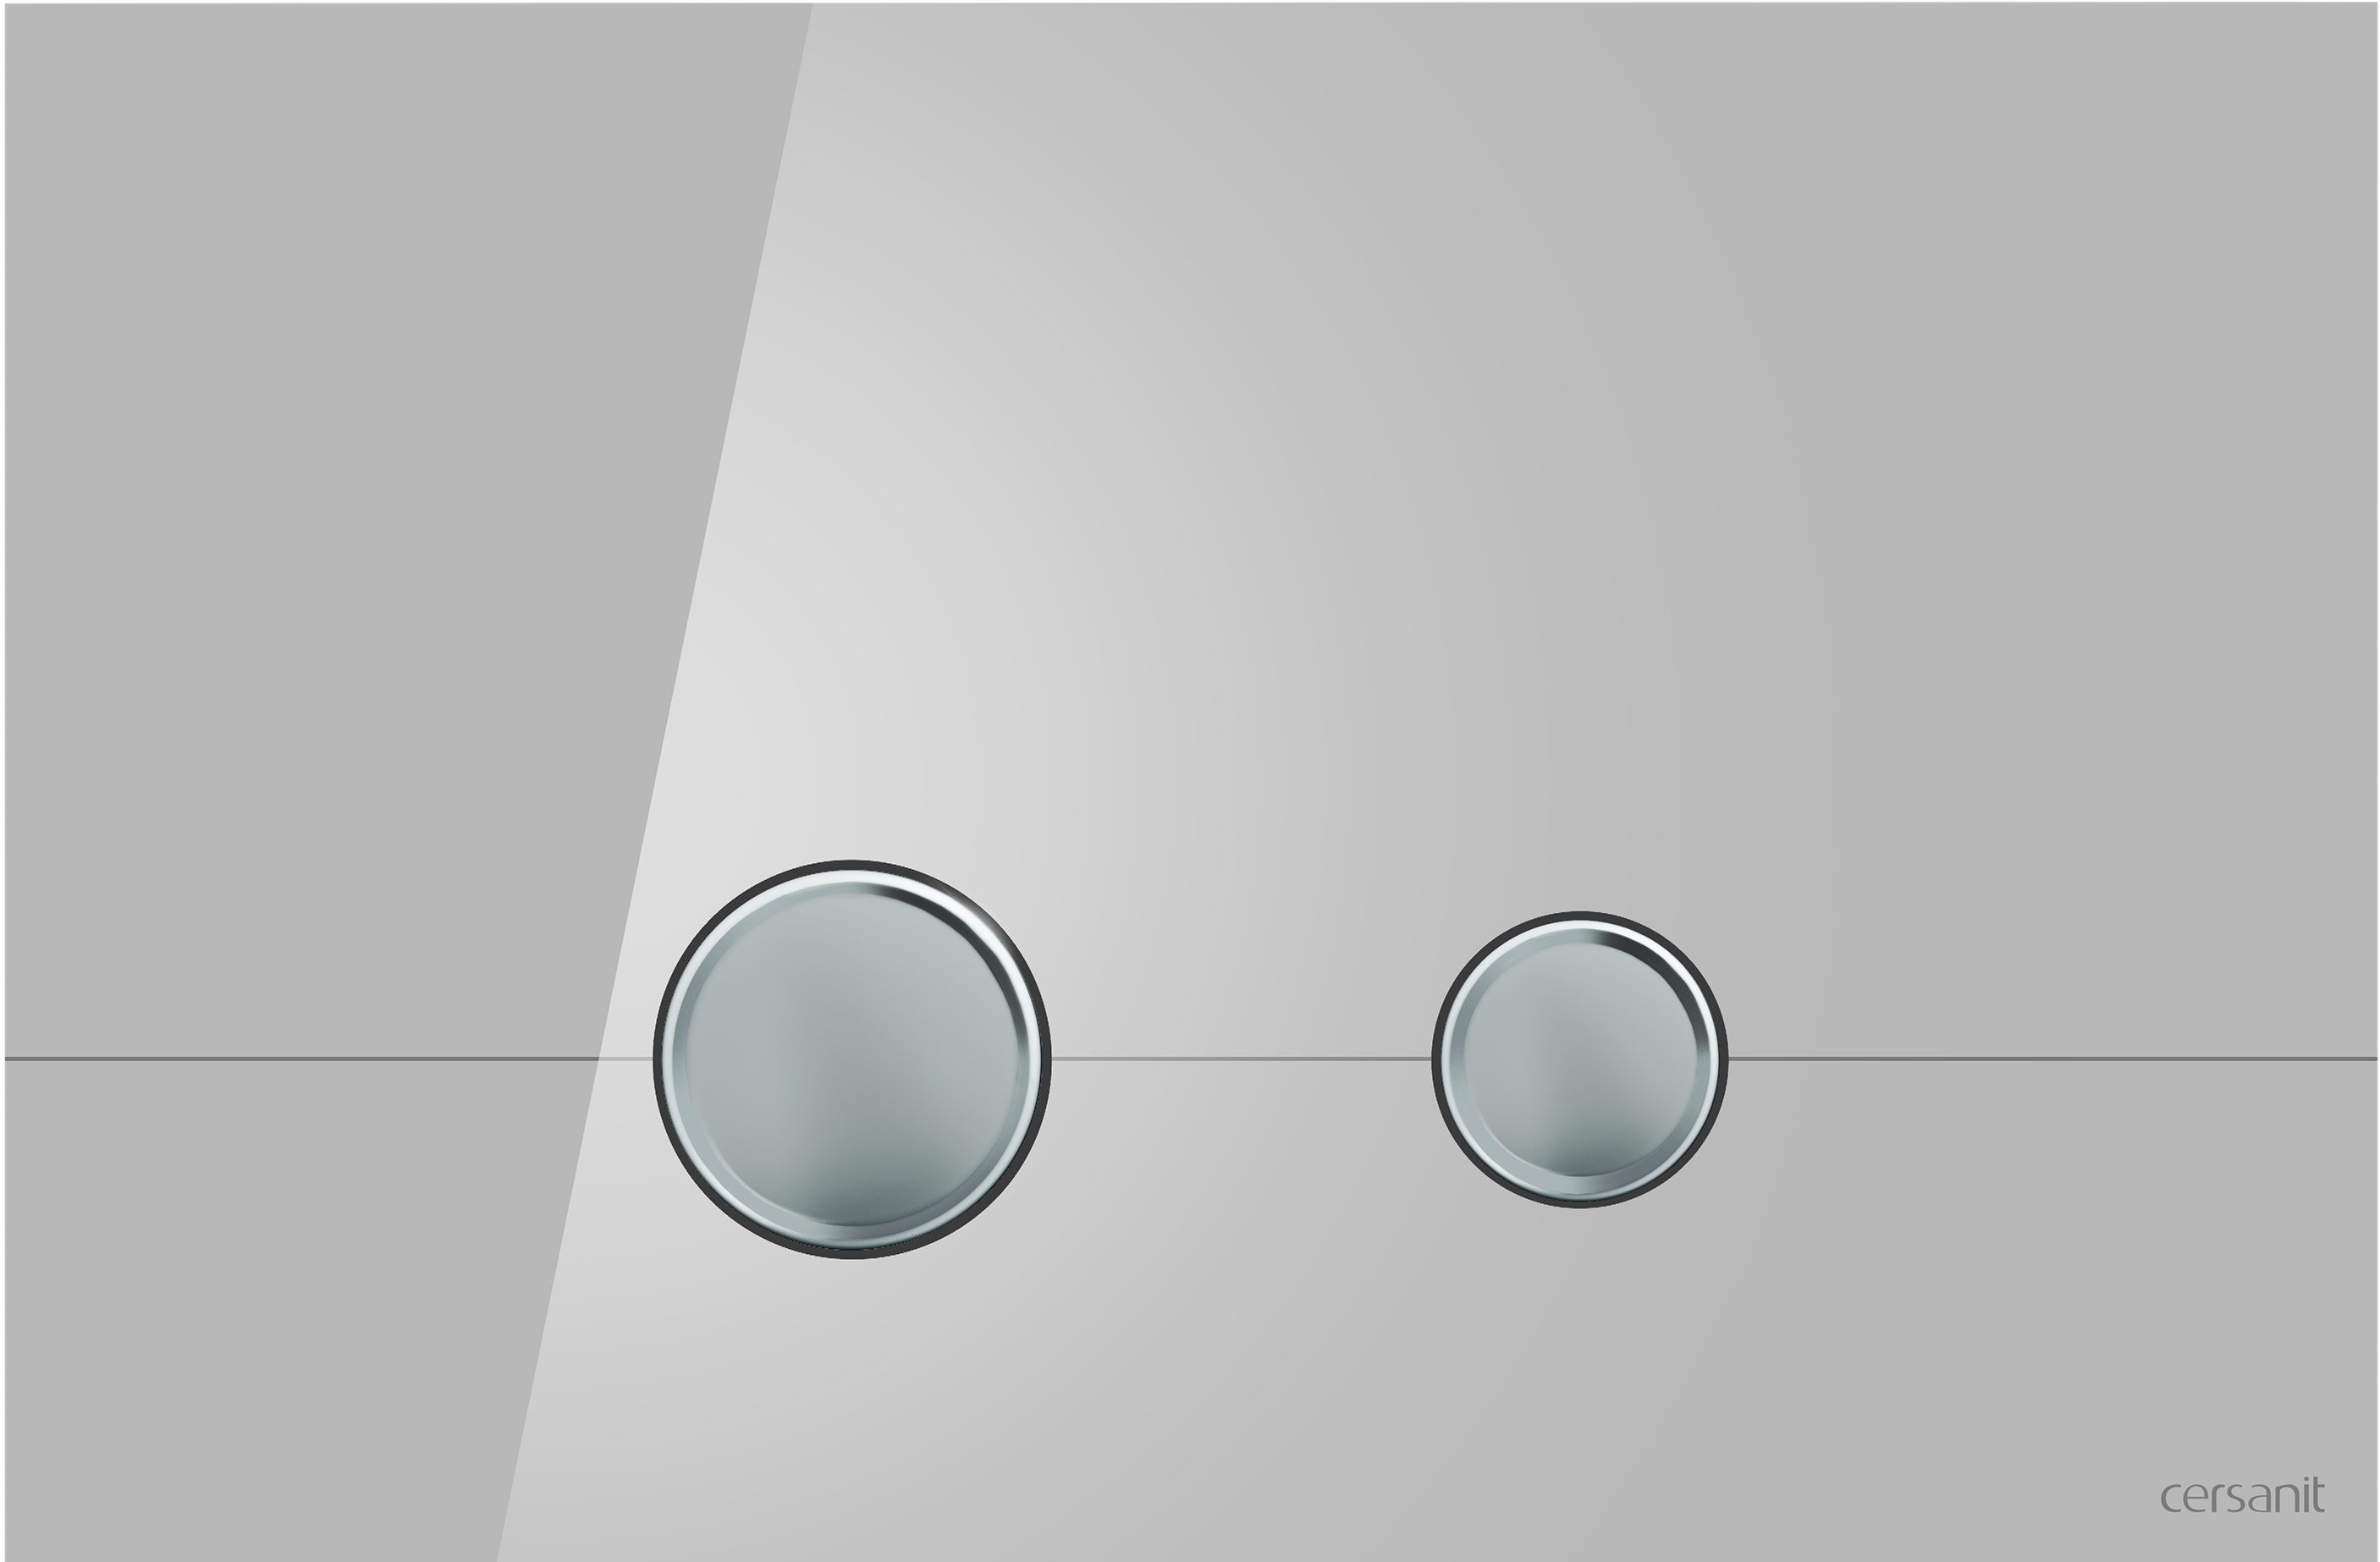 Кнопка STERO для LINK PRO/VECTOR/LINK/HI-TEC стекло серый